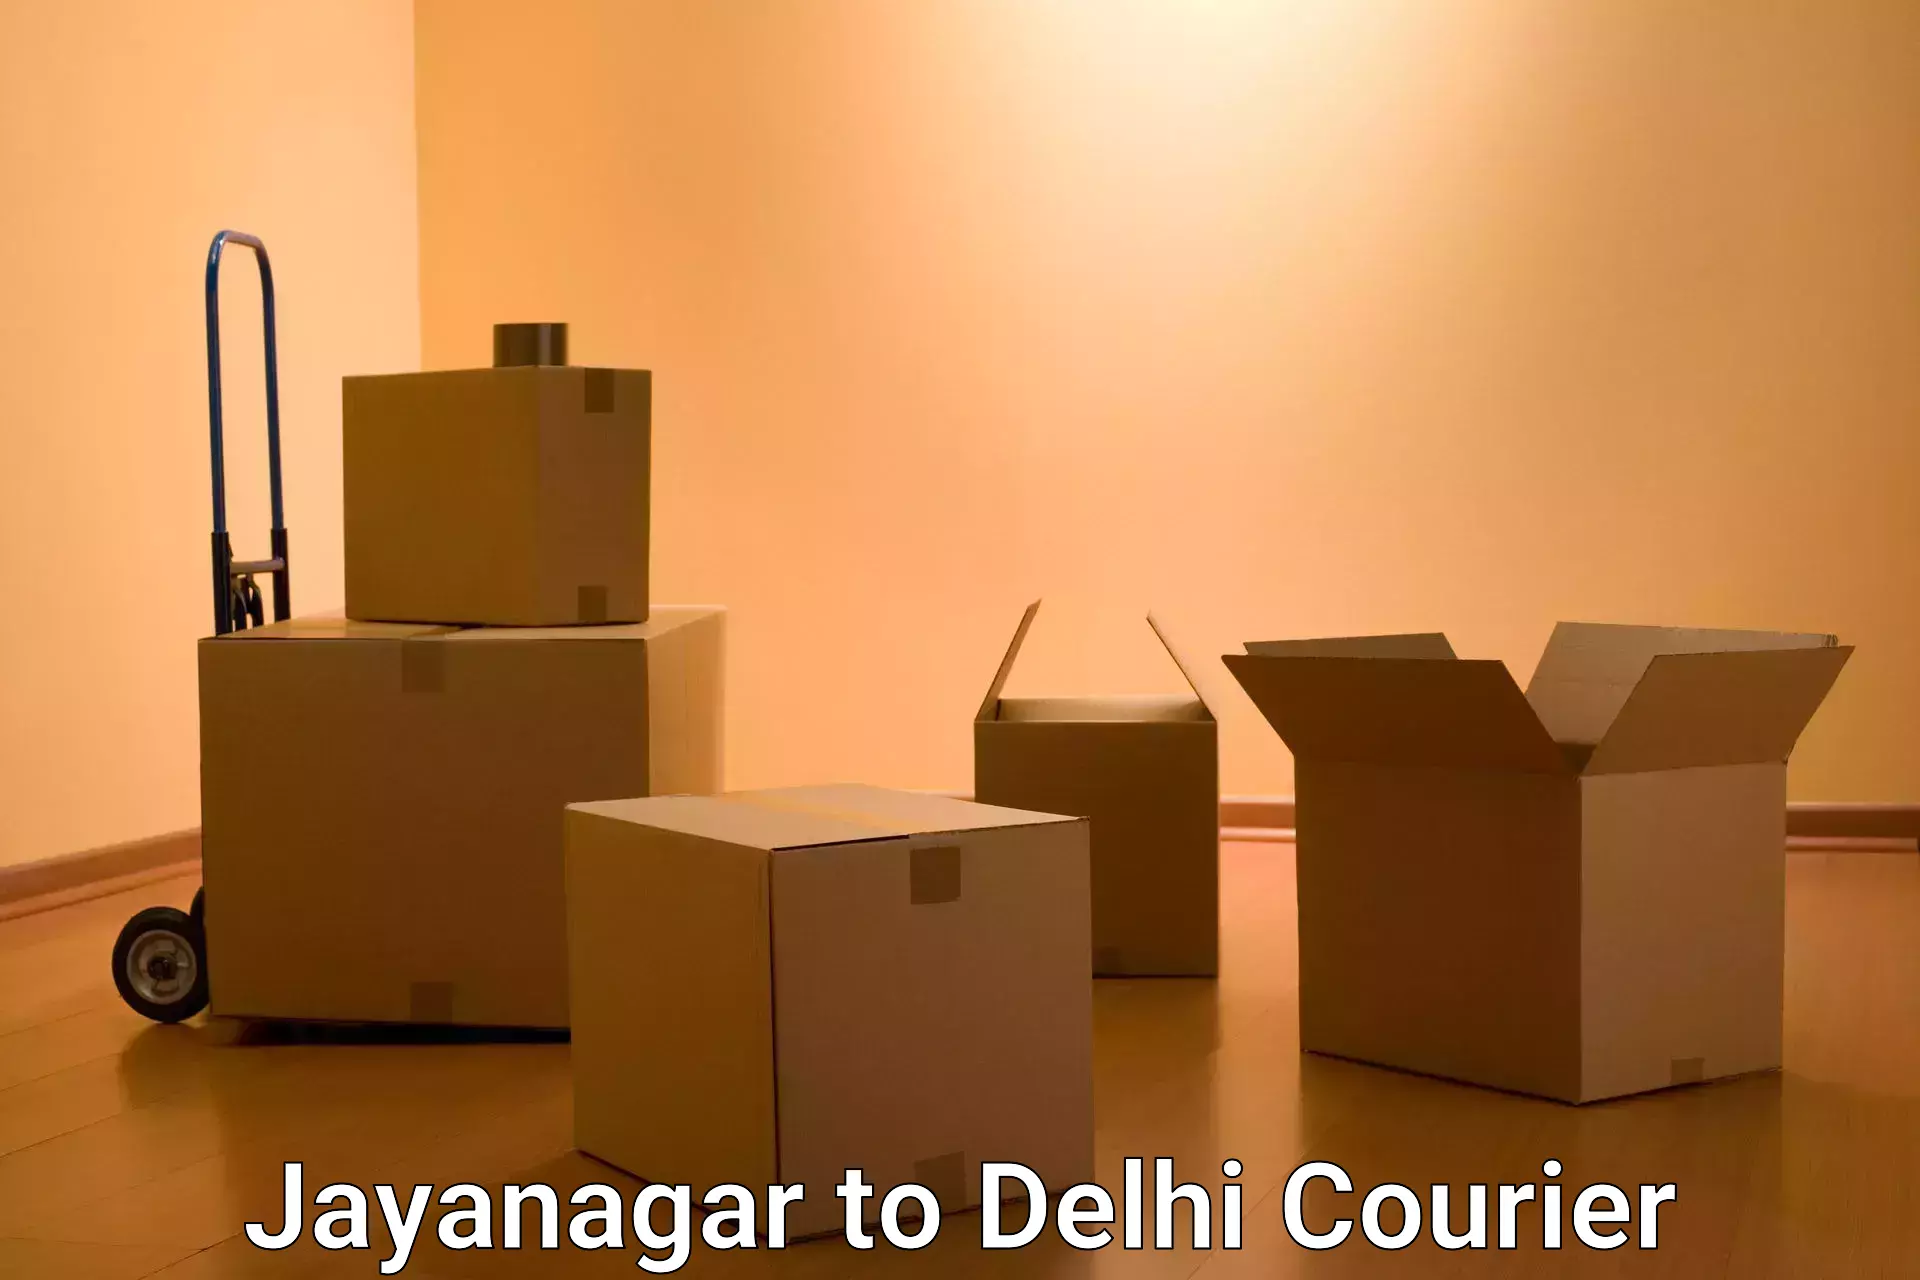 International parcel service Jayanagar to IIT Delhi